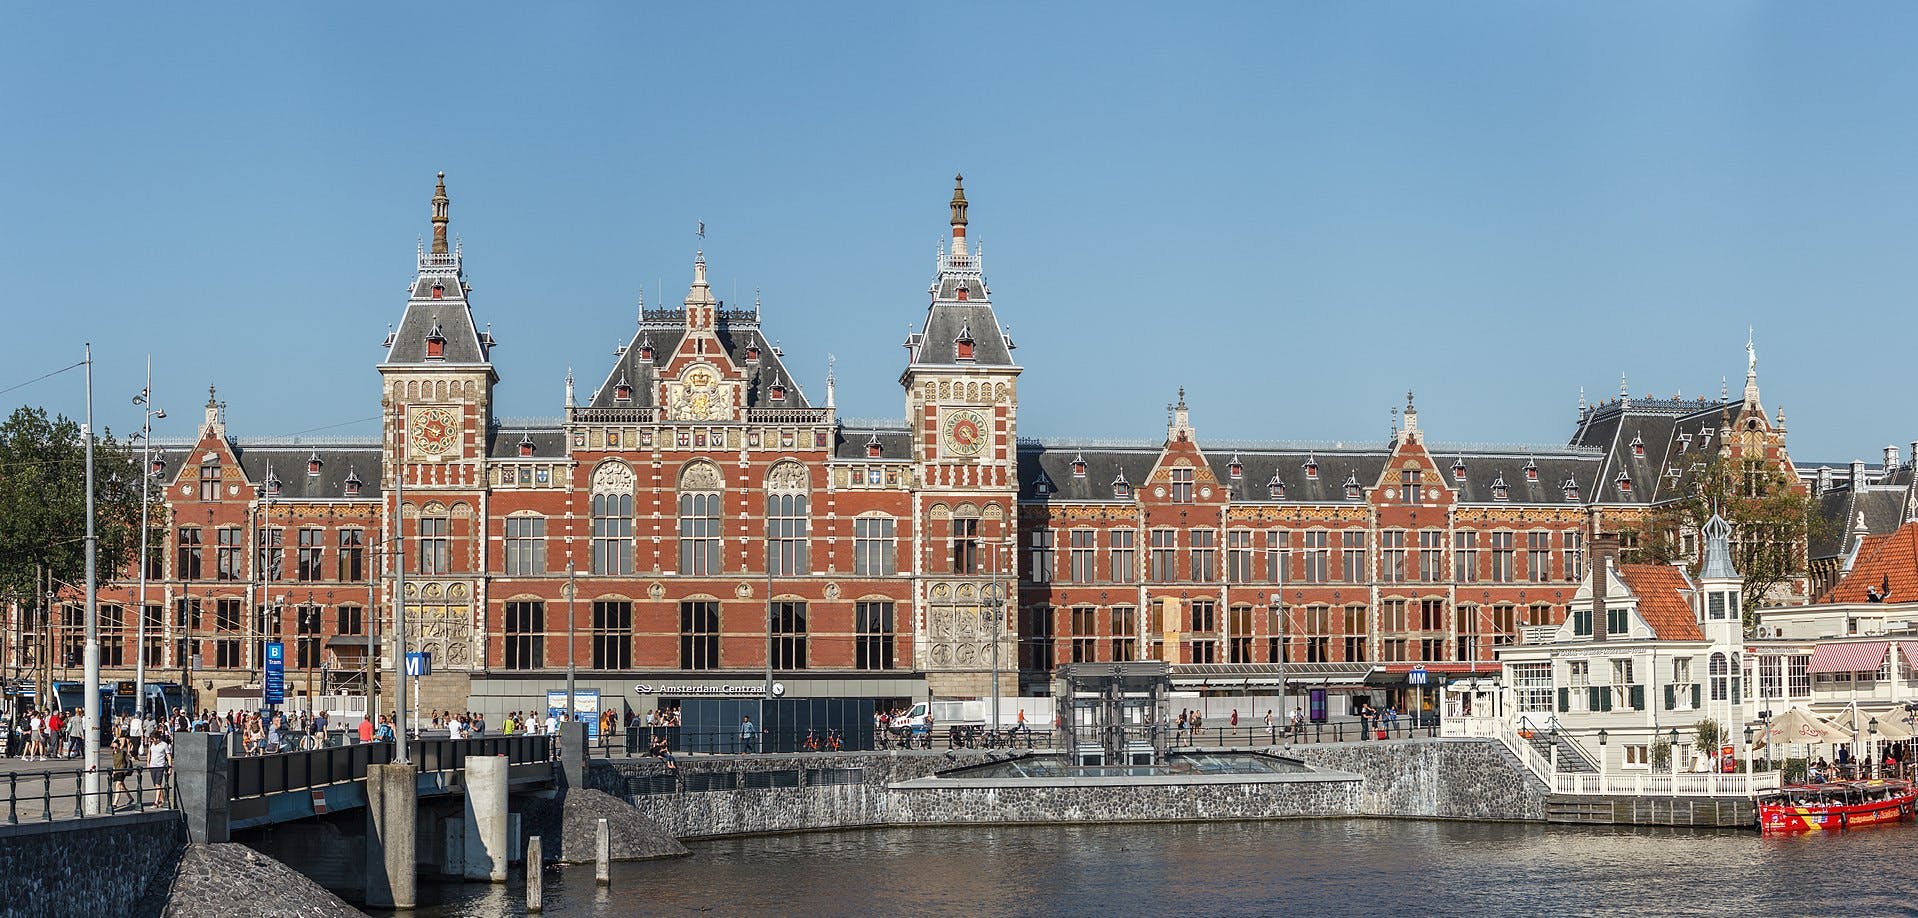 Excursão guiada privada histórica de Amsterdã por 2,5 horas